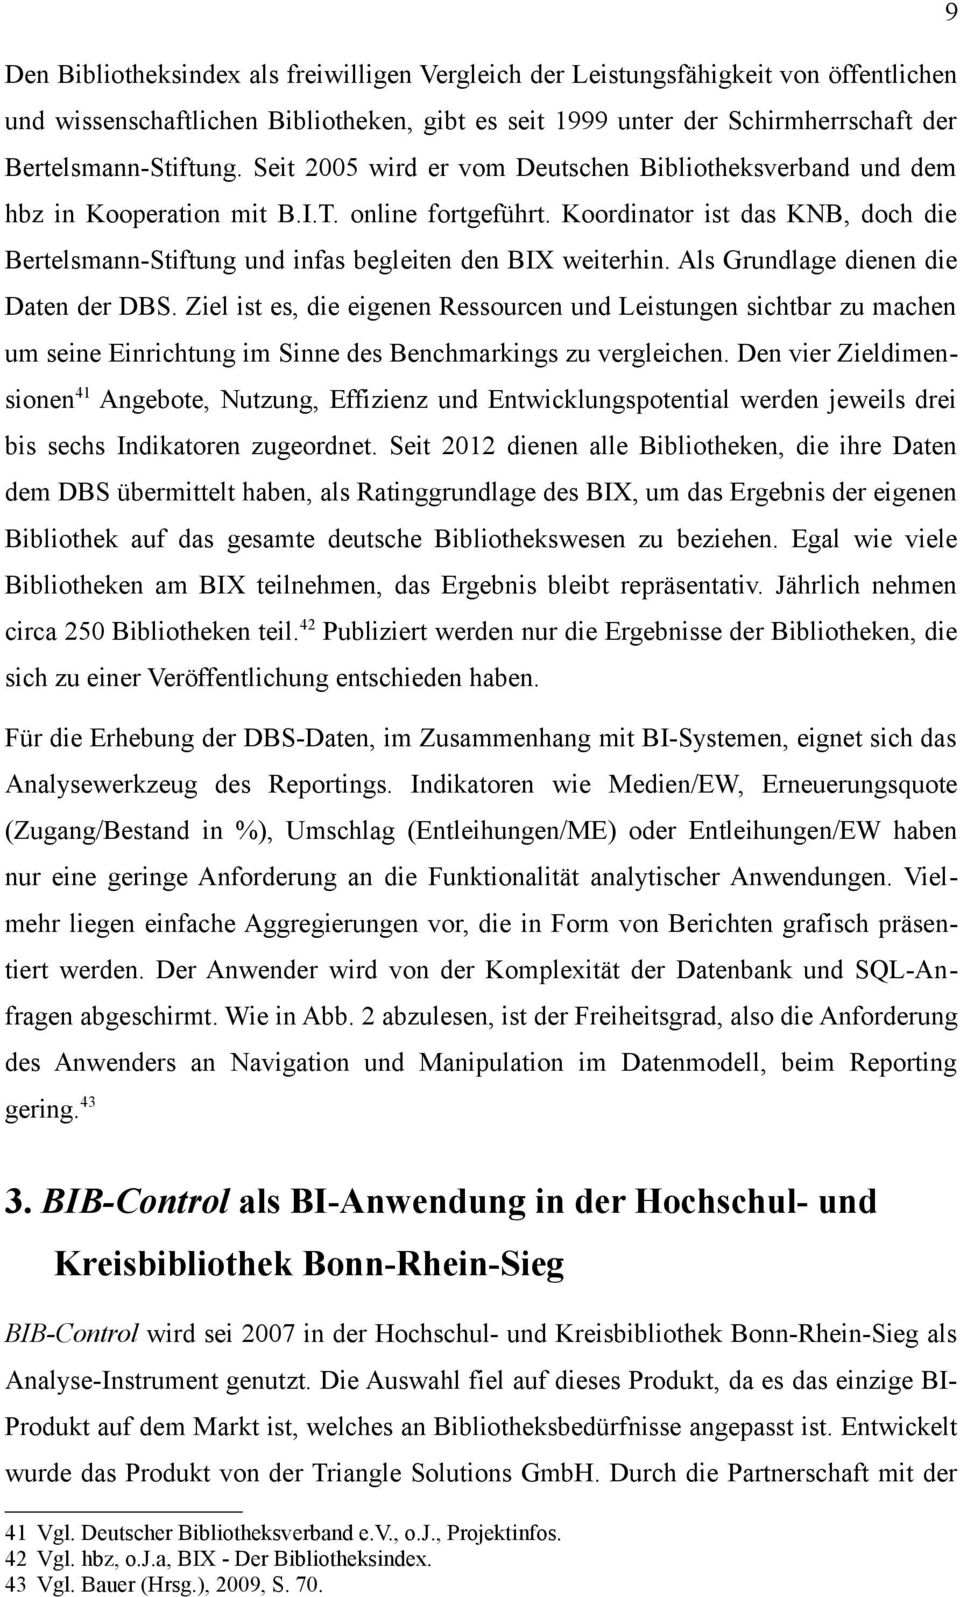 Koordinator ist das KNB, doch die Bertelsmann-Stiftung und infas begleiten den BIX weiterhin. Als Grundlage dienen die Daten der DBS.